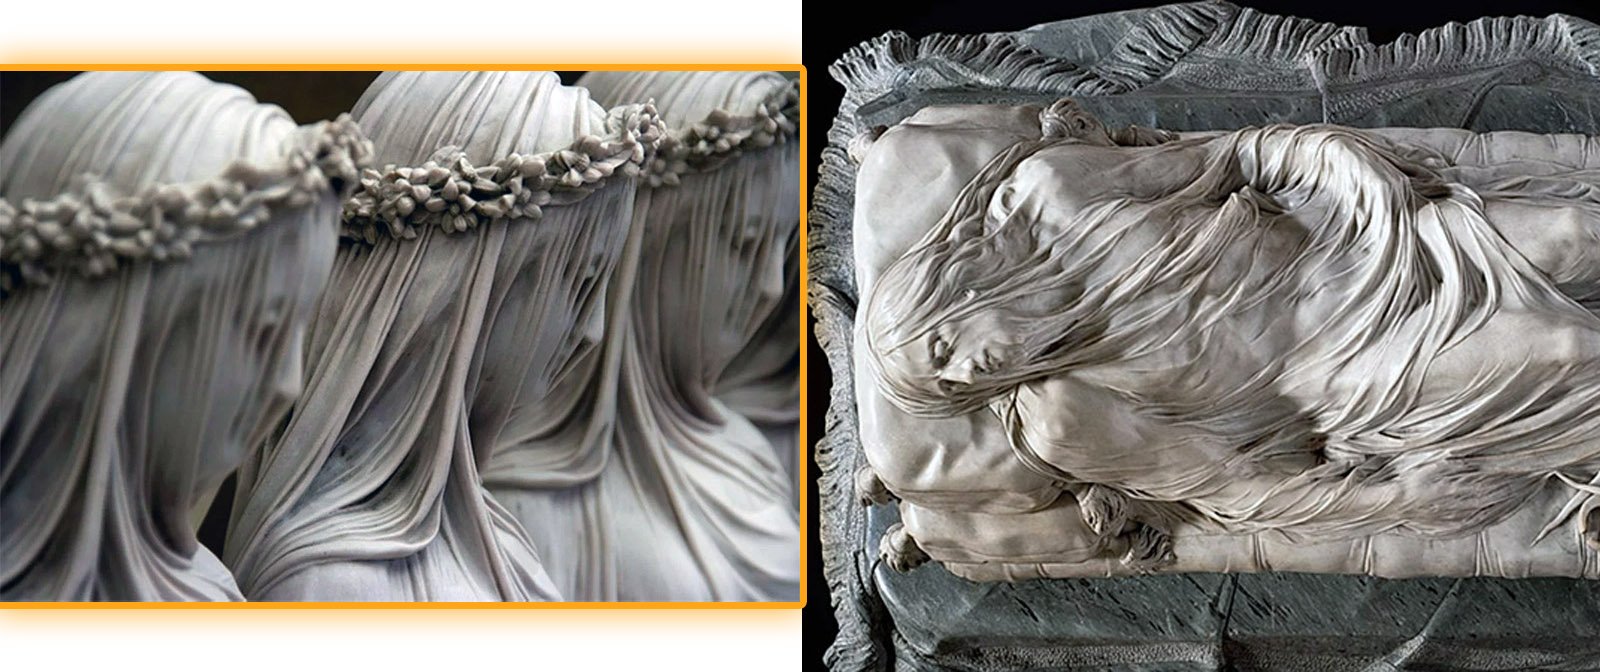 Невесомая вуаль на скульптурах. Как итальянские мастера добивались такого эффекта?